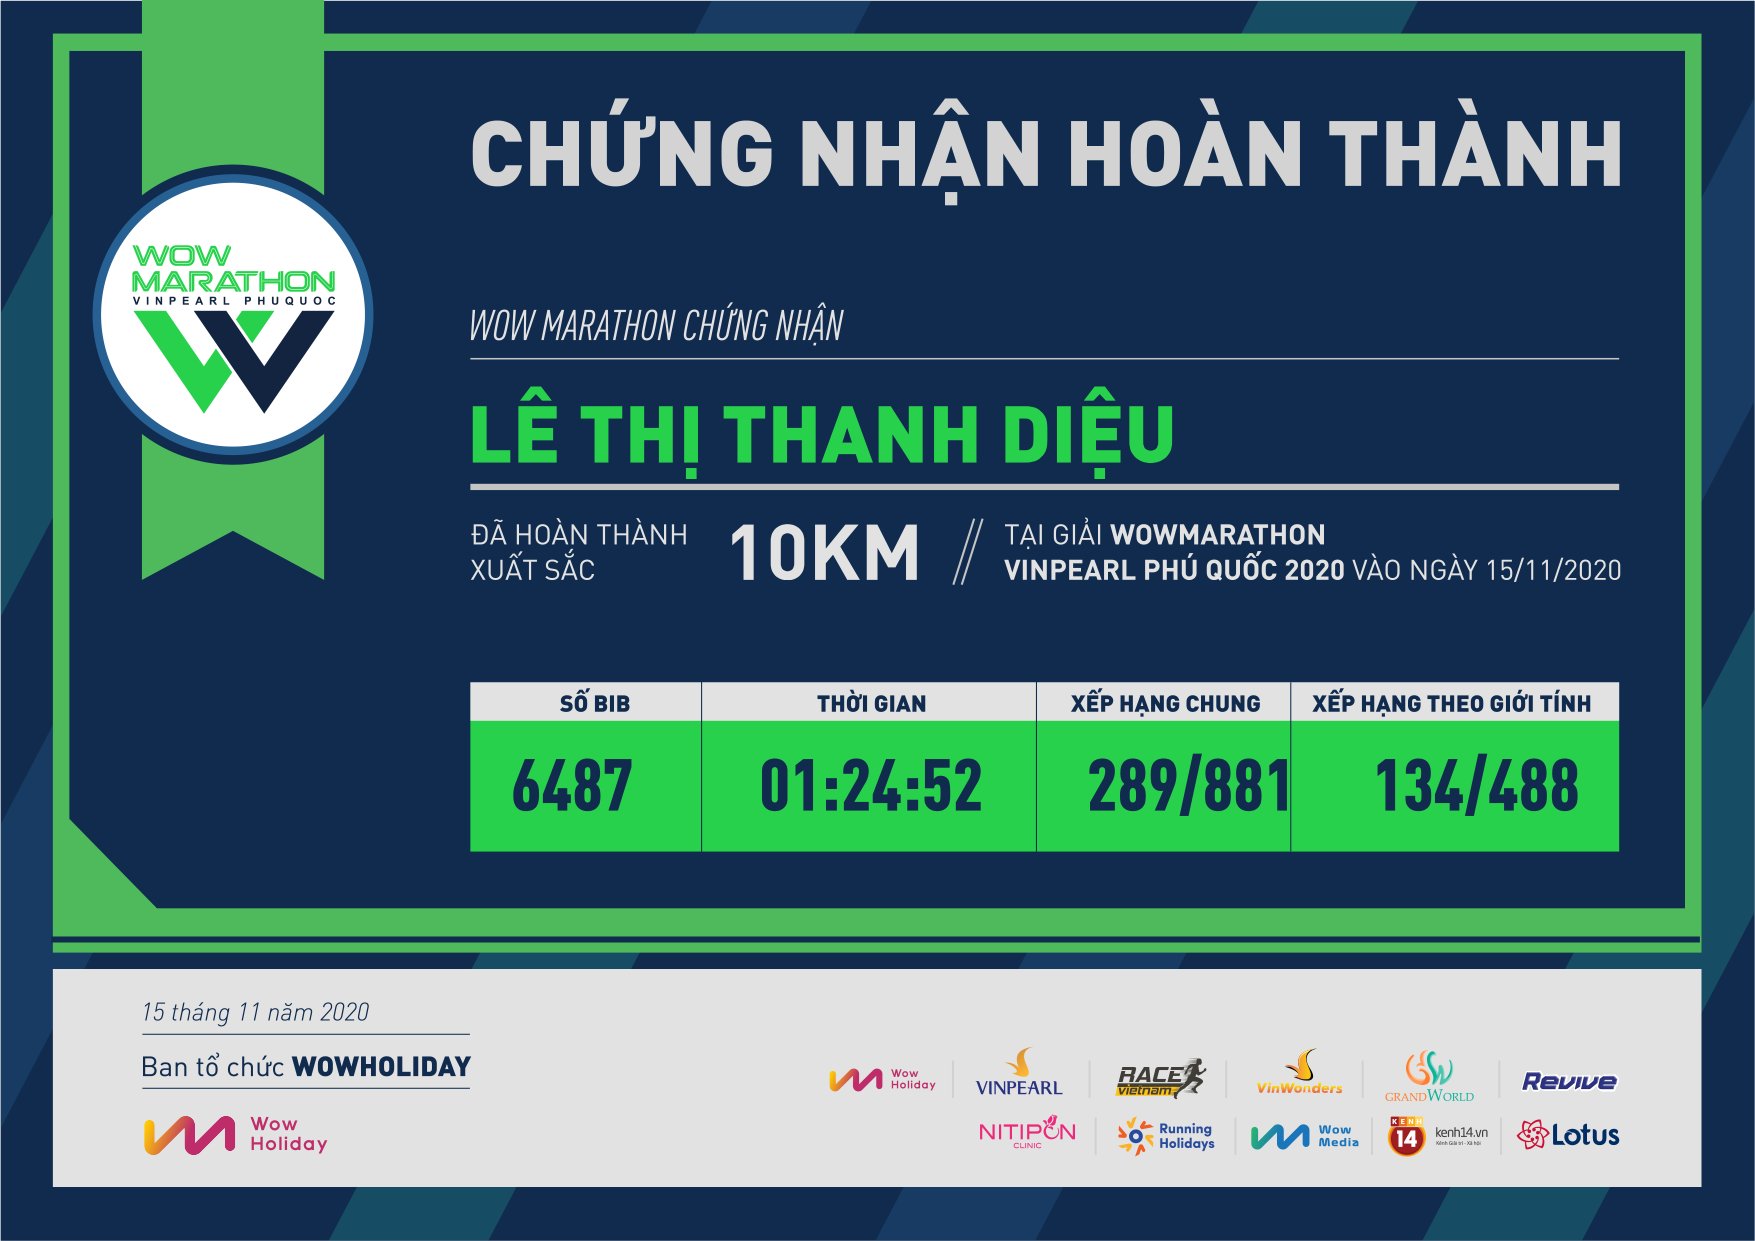 6487 - Lê Thị Thanh Diệu